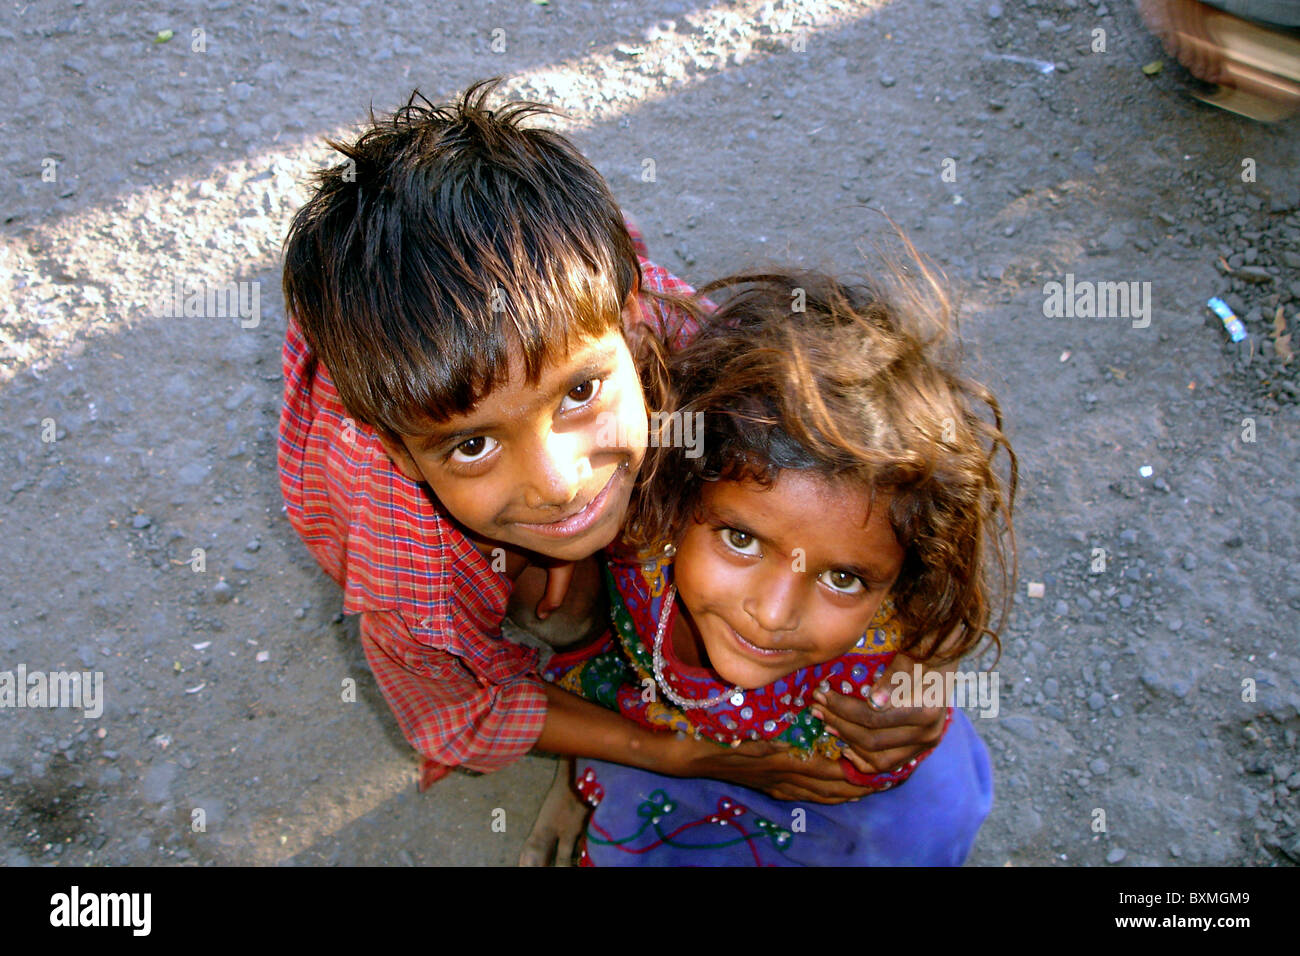 Portrait ou rapprochée de deux enfants des rues indiennes avec l'innocence en face de la rue de l'Inde Banque D'Images